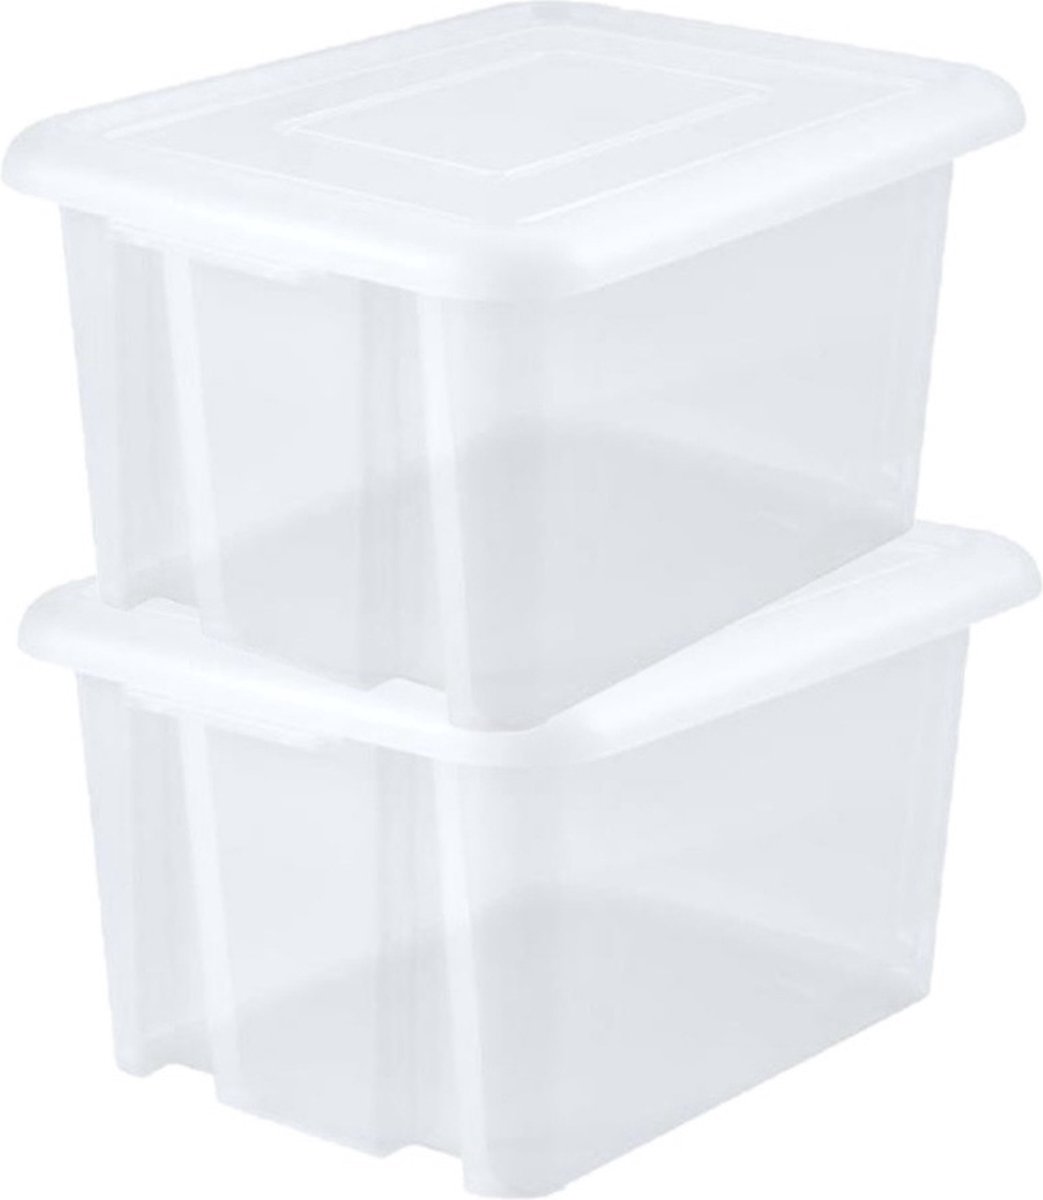 6x stuks kunststof opbergboxen/opbergdozen wit transparant L65 x B50 x H36 cm stapelbaar - Voorraad/opberg boxen/kisten/bakken met deksel